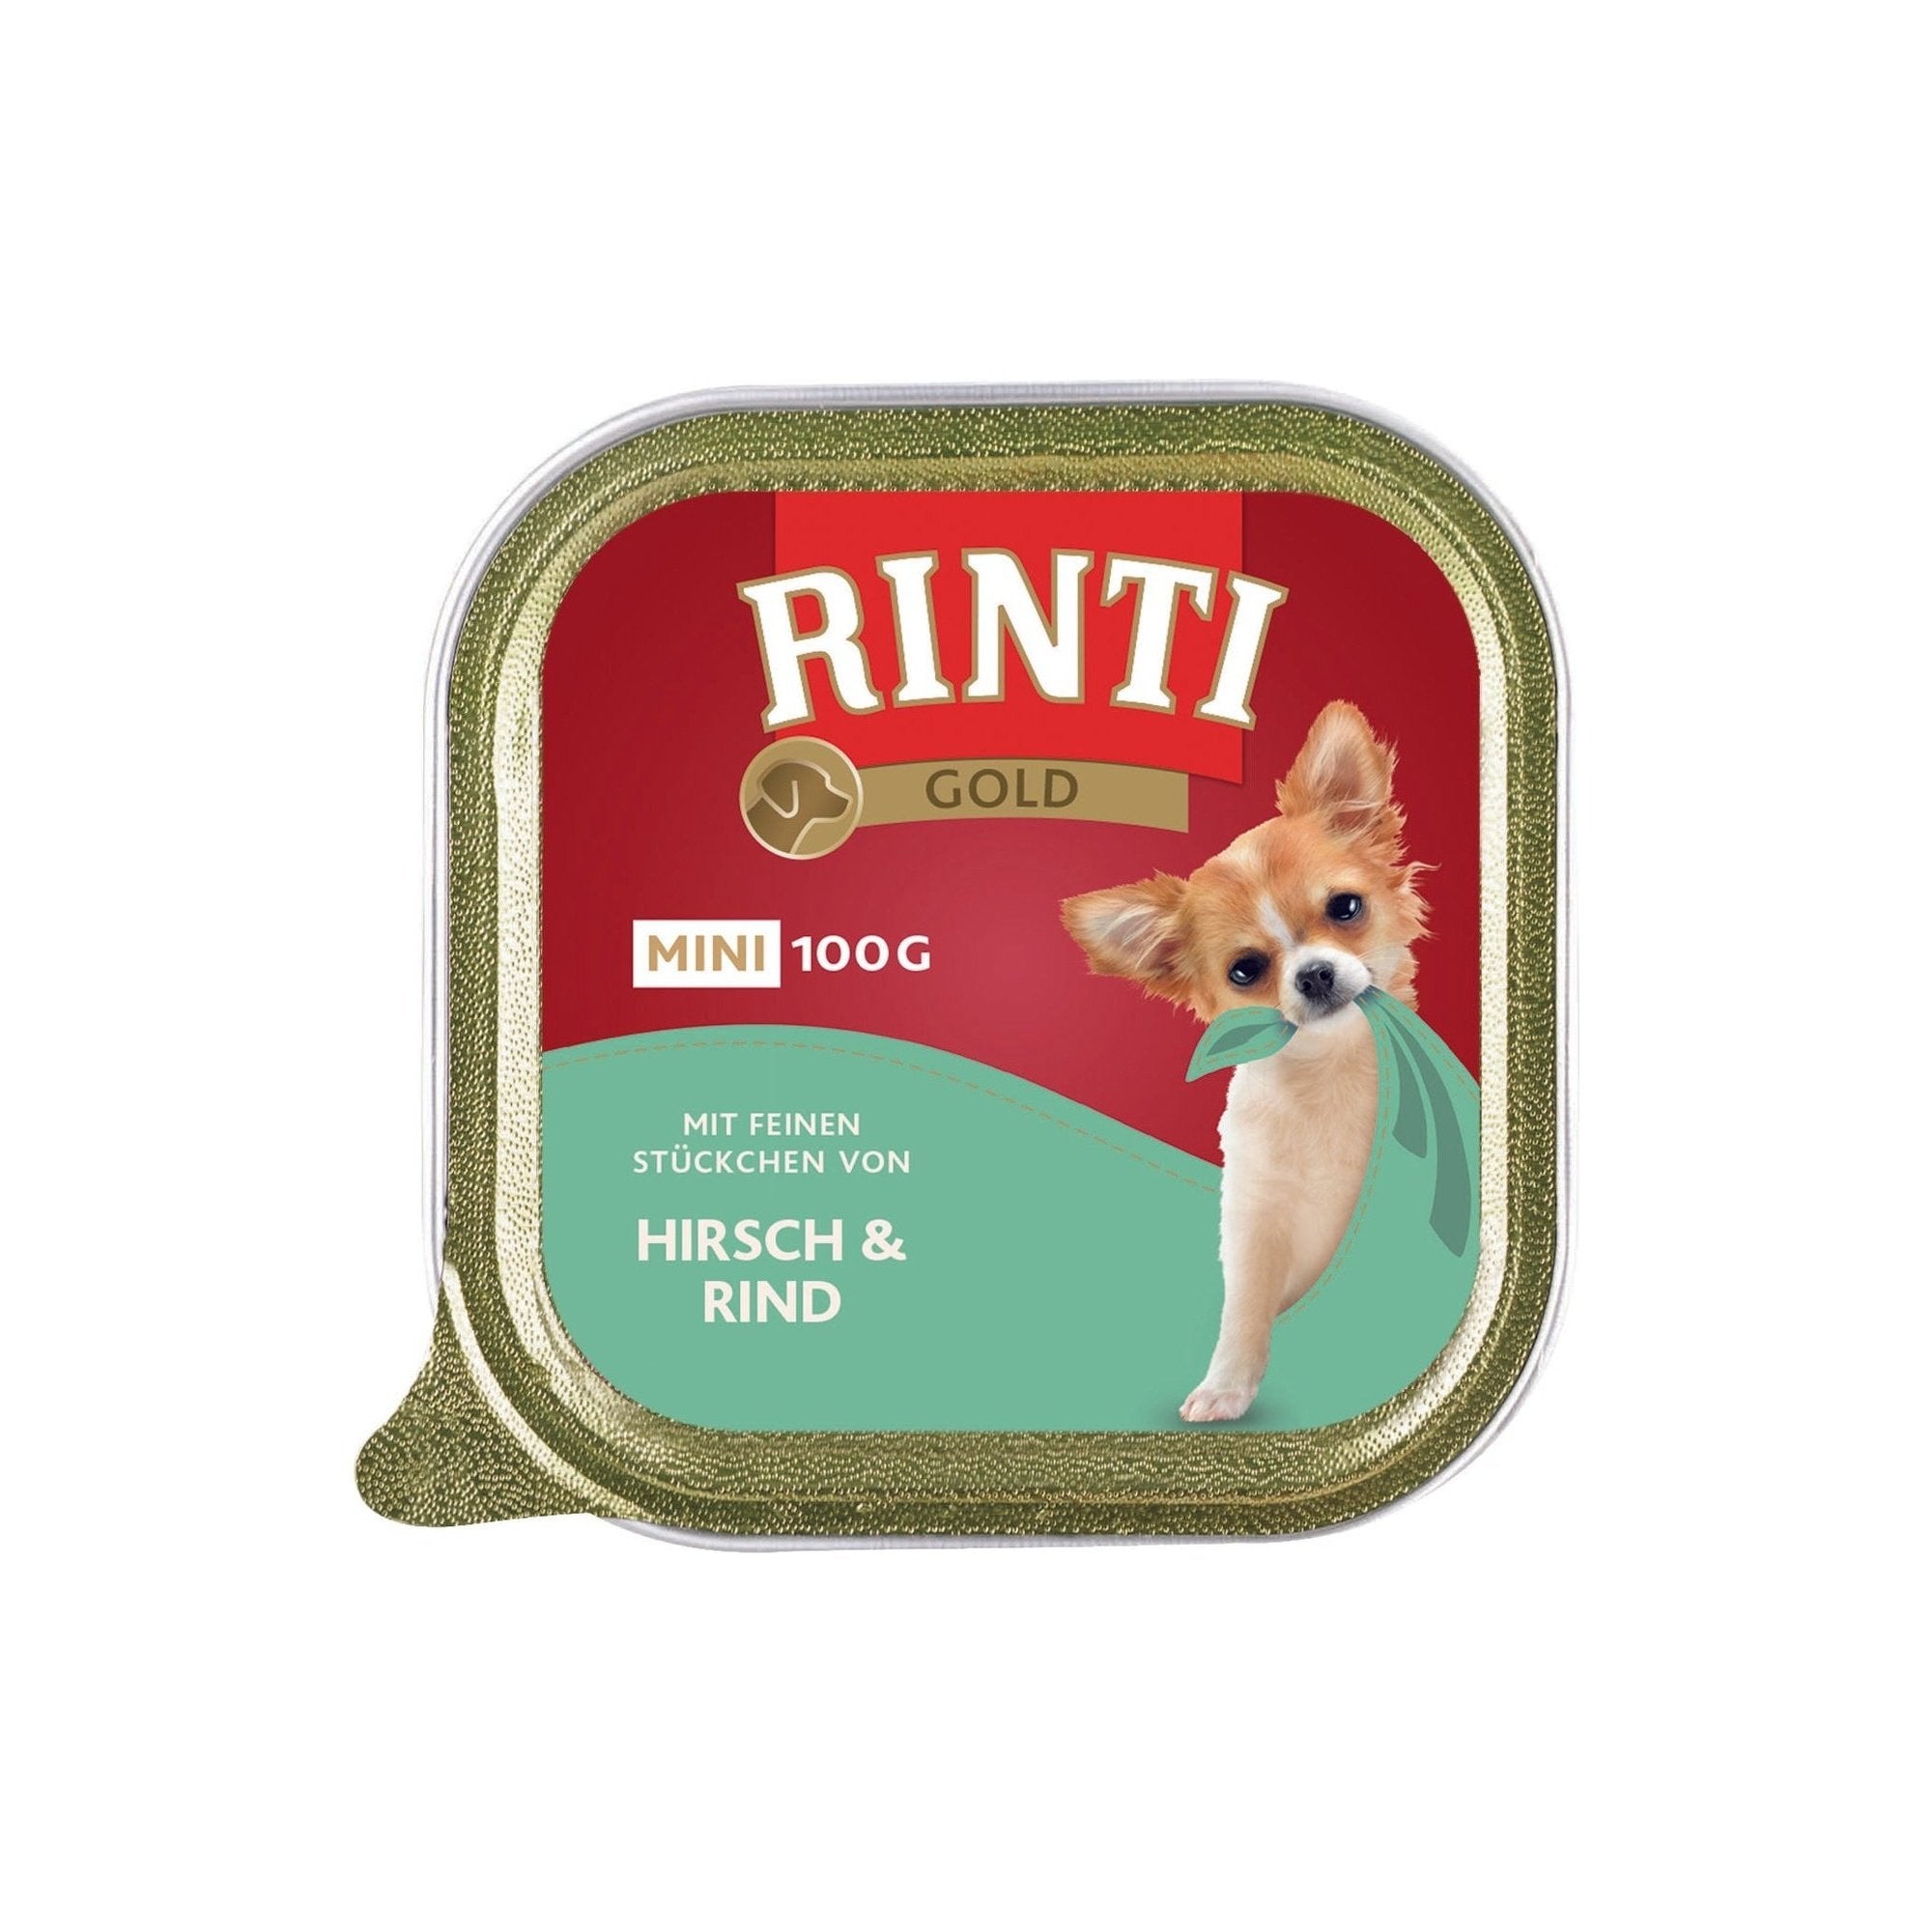 Artikel mit dem Namen Rinti Gold mini Hirsch & Rind im Shop von zoo.de , dem Onlineshop für nachhaltiges Hundefutter und Katzenfutter.